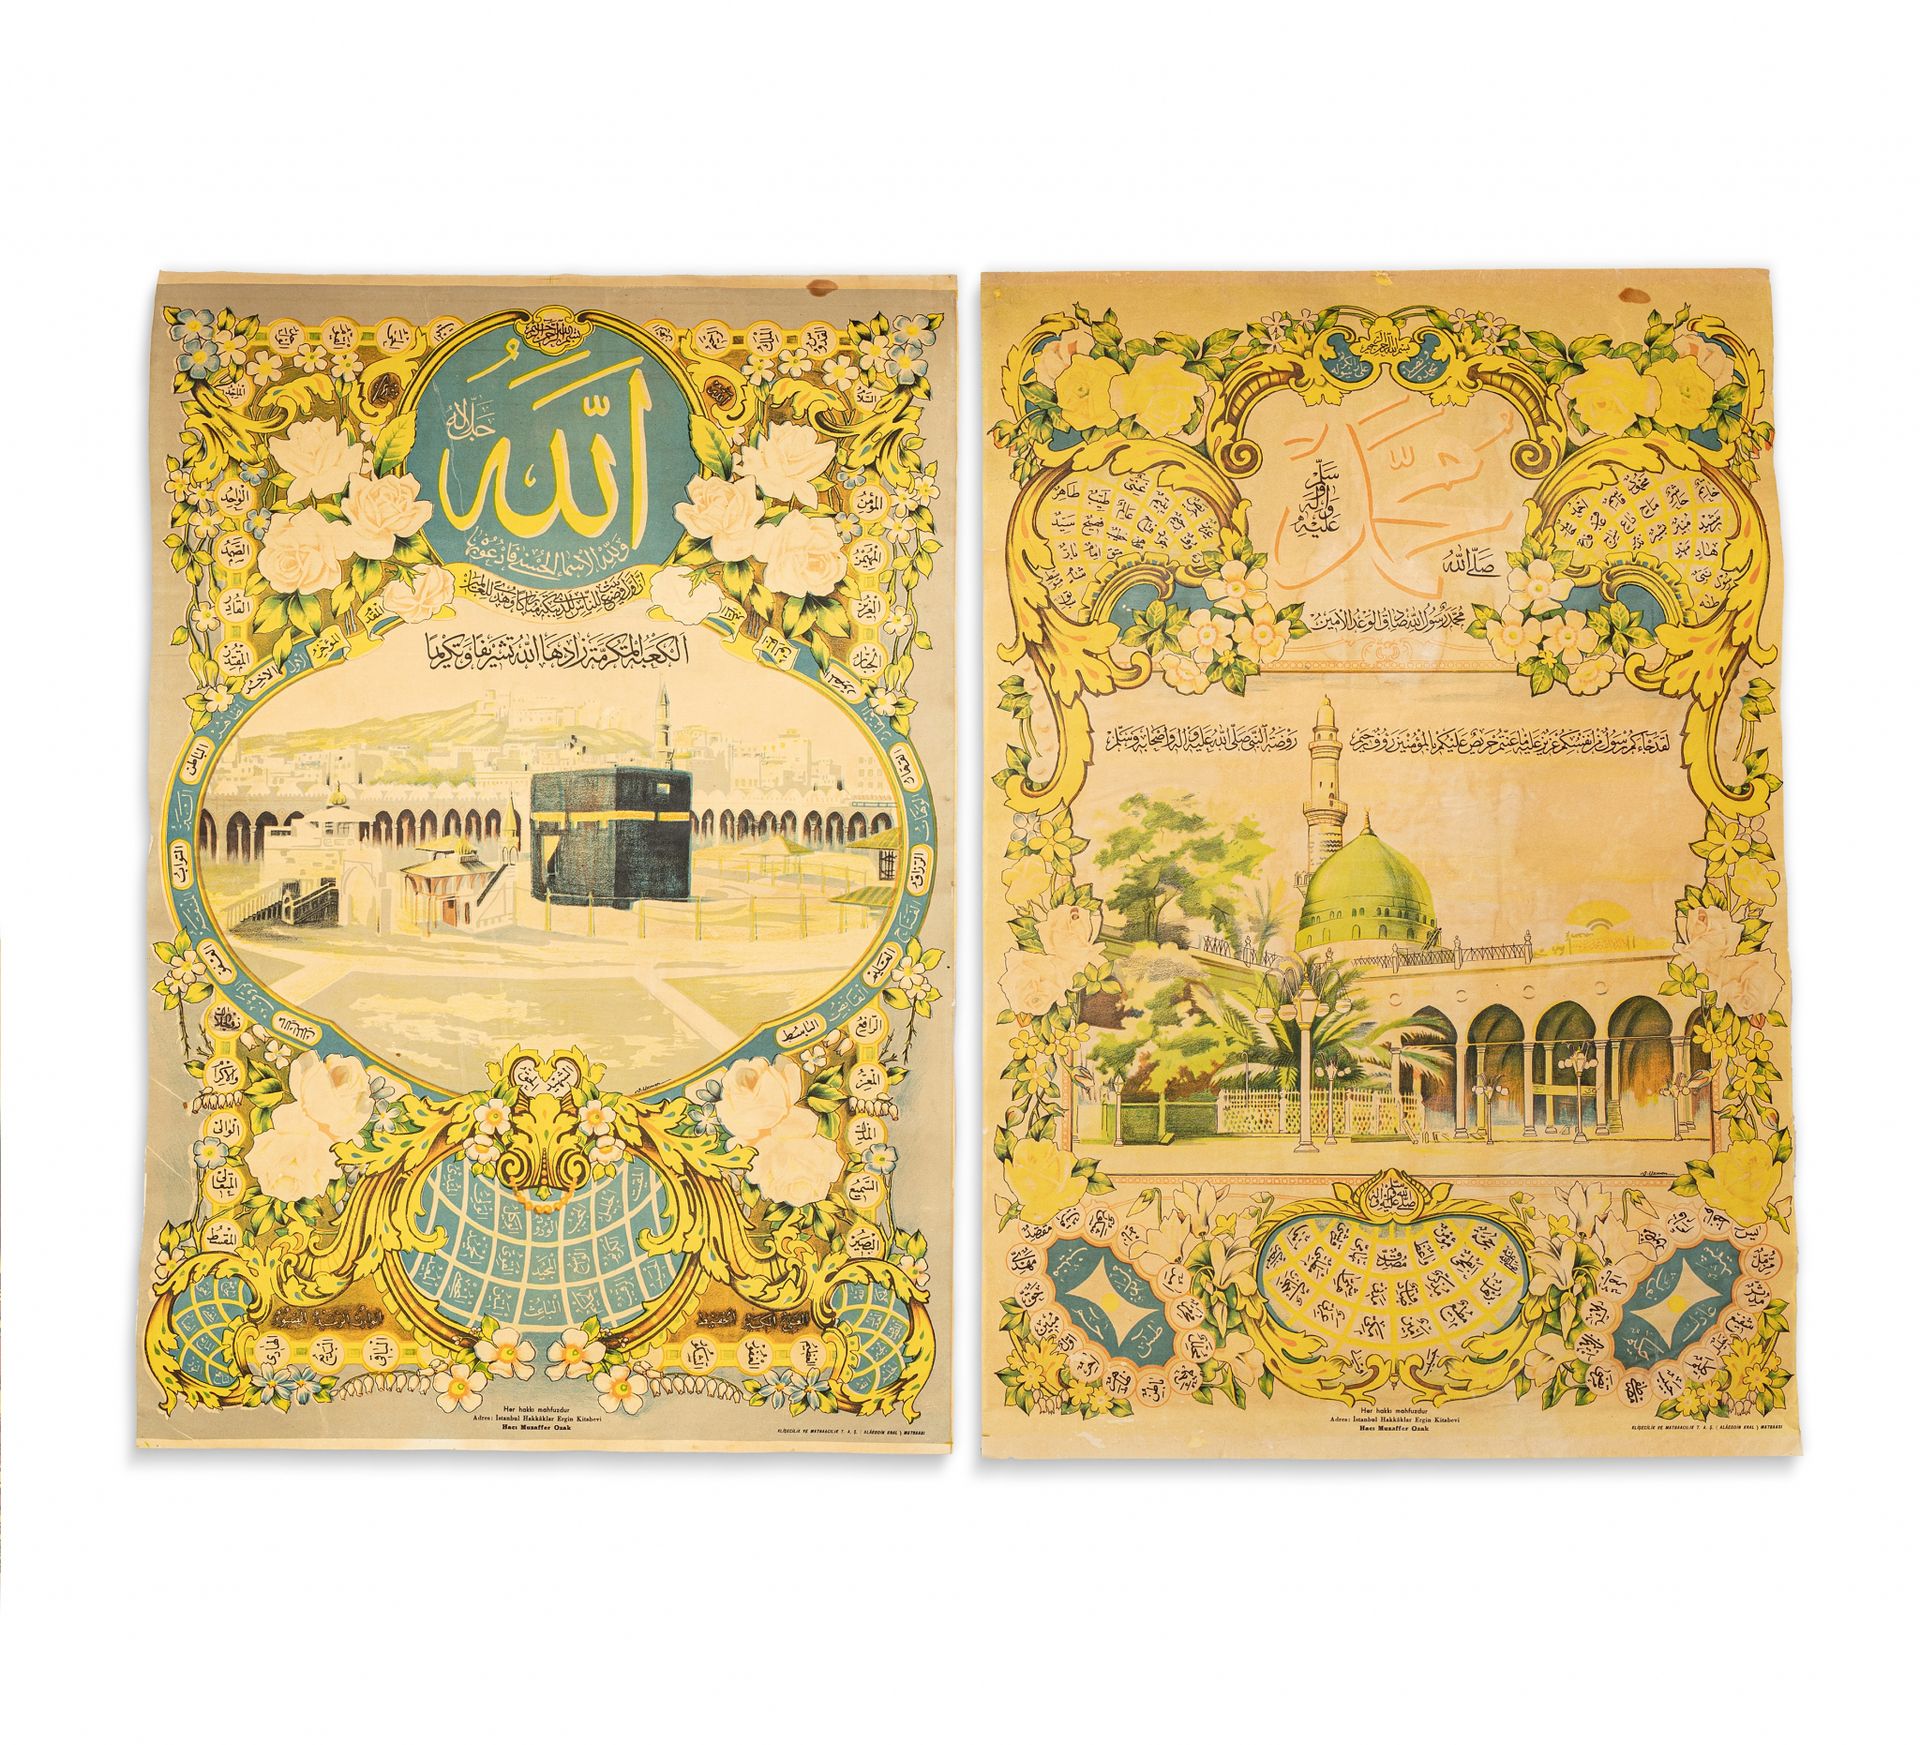 Deux grandes hilye imprimés Türkei, 20. Jahrhundert

Zwei große gedruckte kallig&hellip;